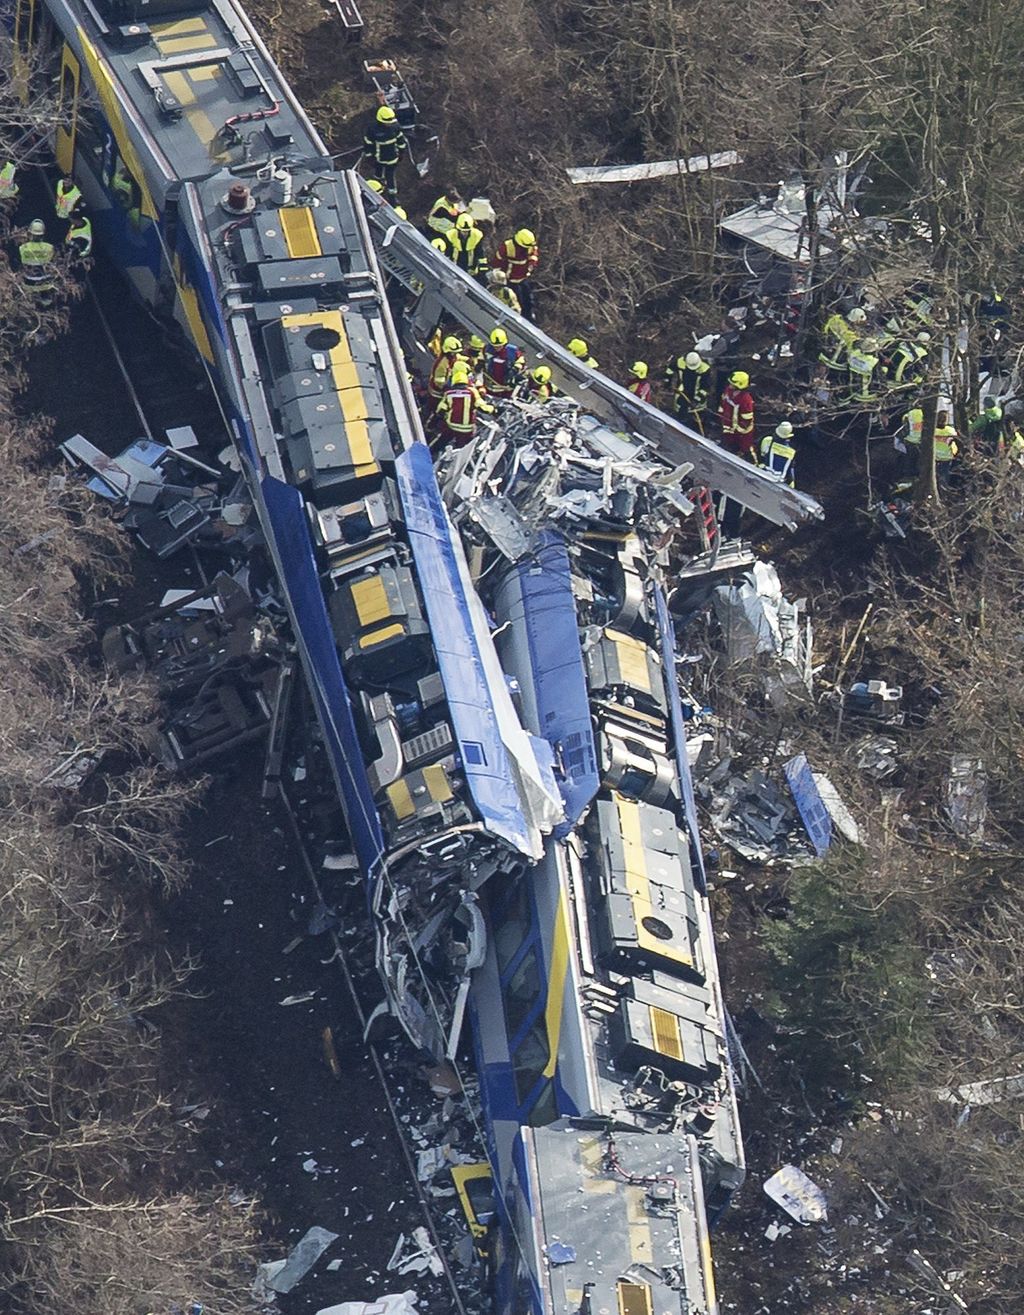 Se trata de uno de los accidentes ferroviarios más graves de la historia reciente de Alemania. (EFE)